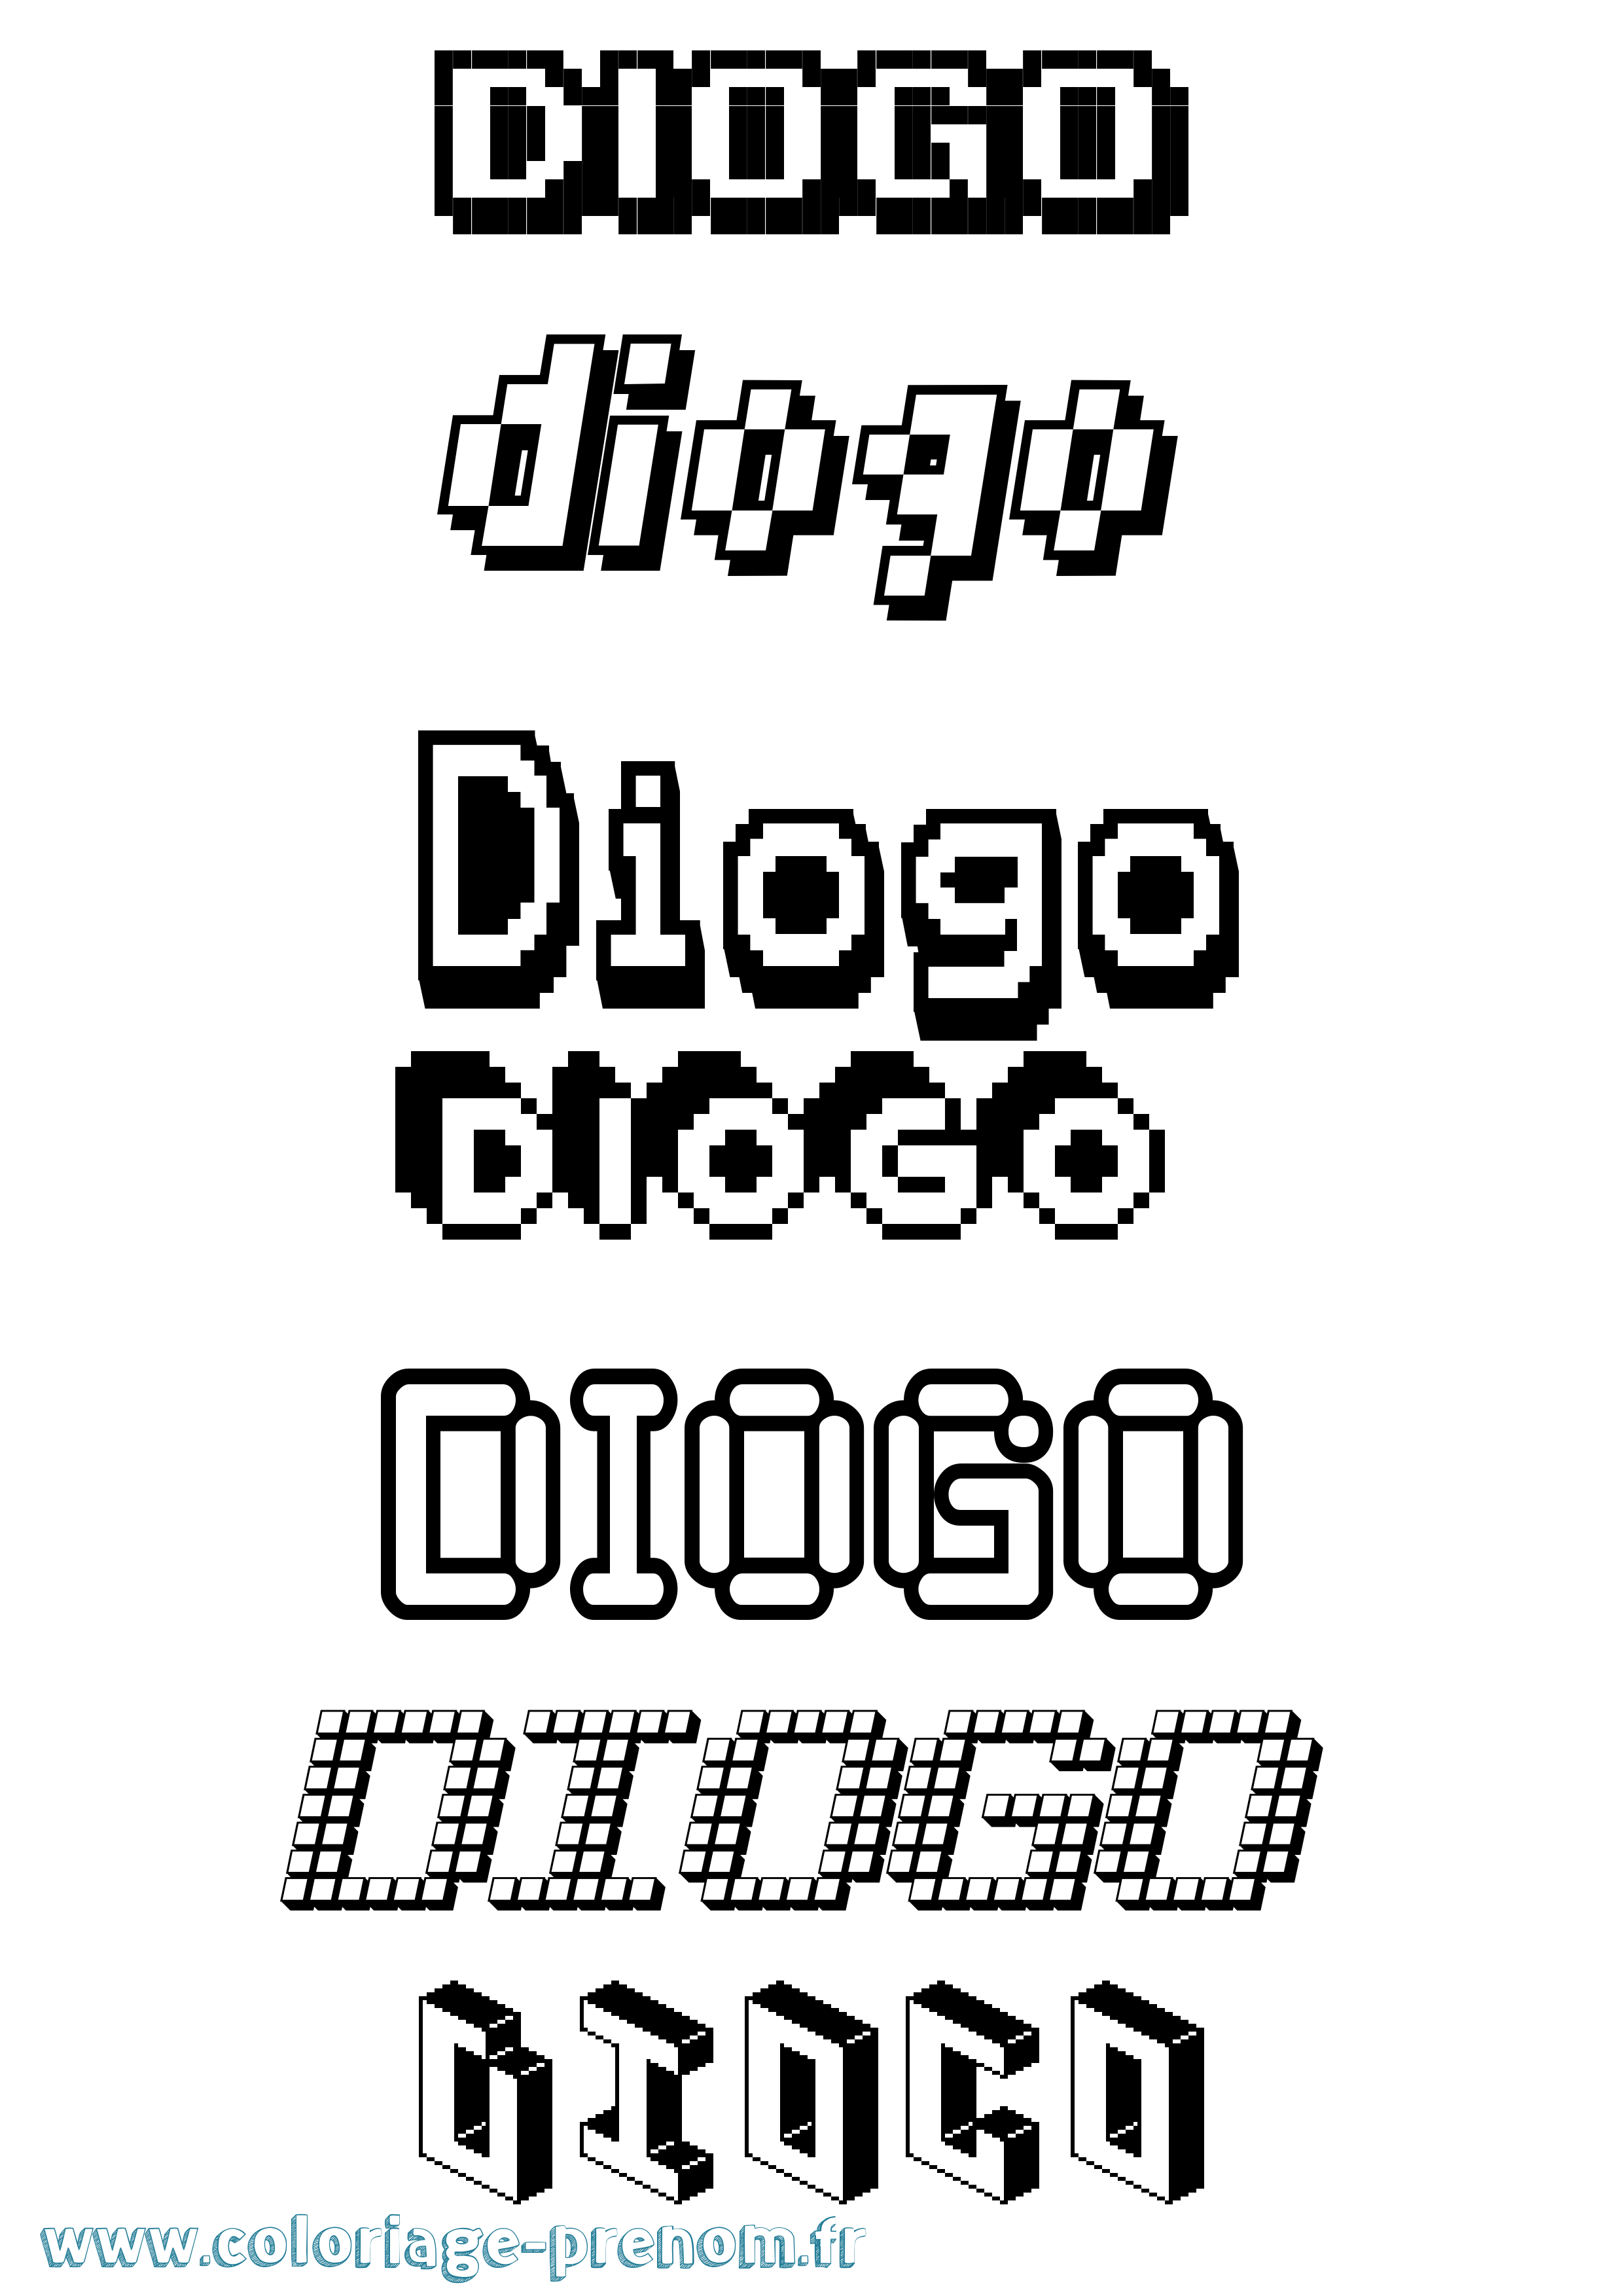 Coloriage prénom Diogo Pixel